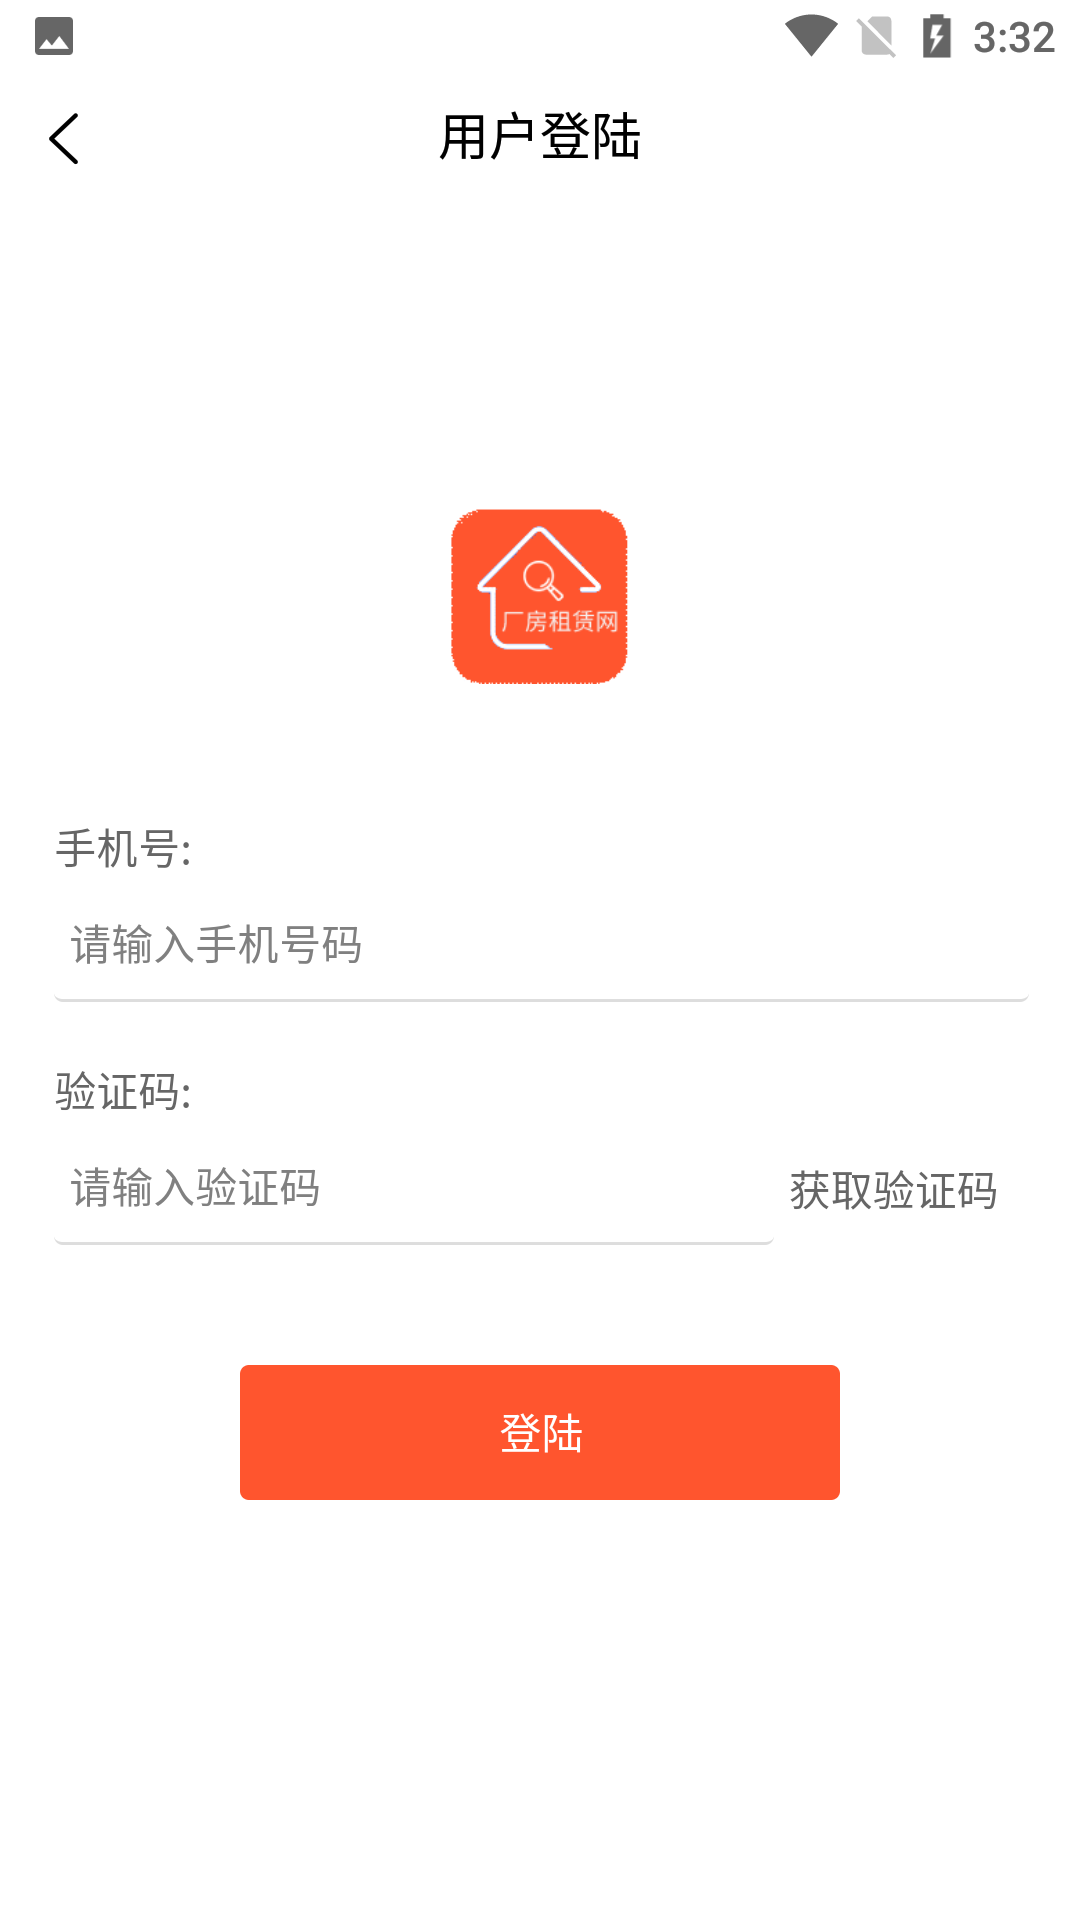 厂房租赁App下载 1.0.21.0.2